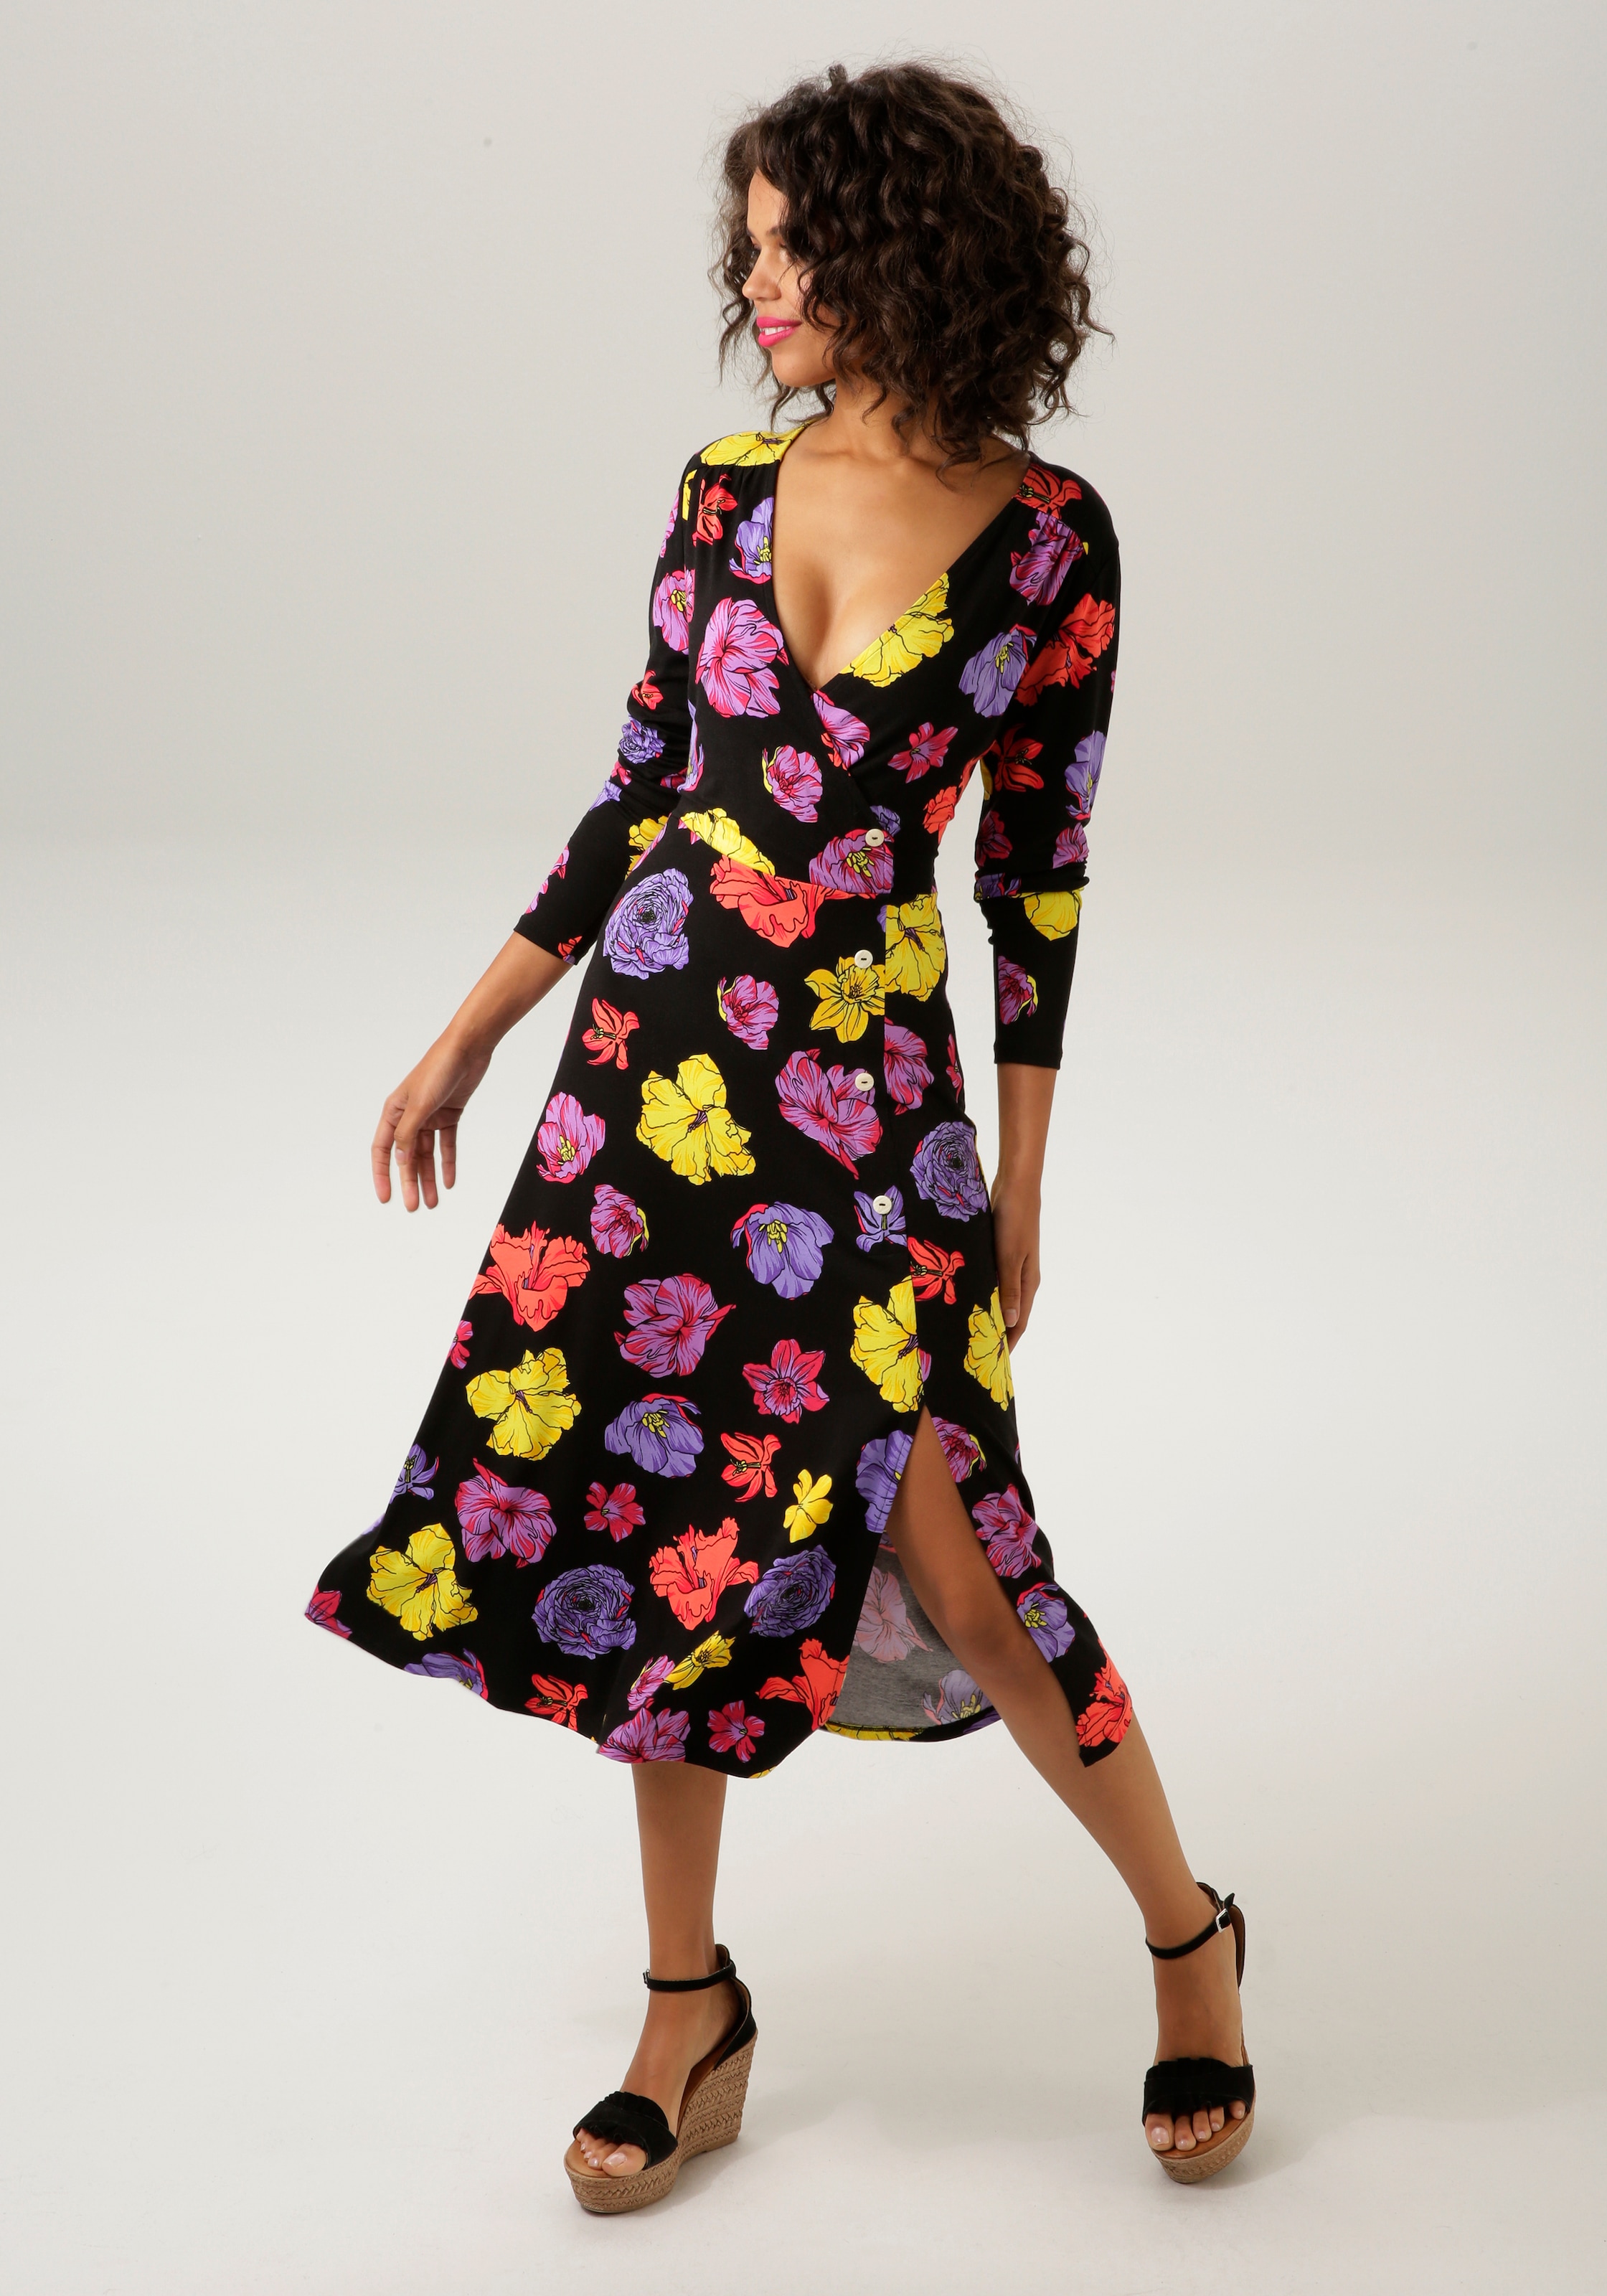 Aniston walking kaufen mit farbenfrohen Jerseykleid, Blüten - | KOLLEKTION CASUAL NEUE I\'m bedruckt